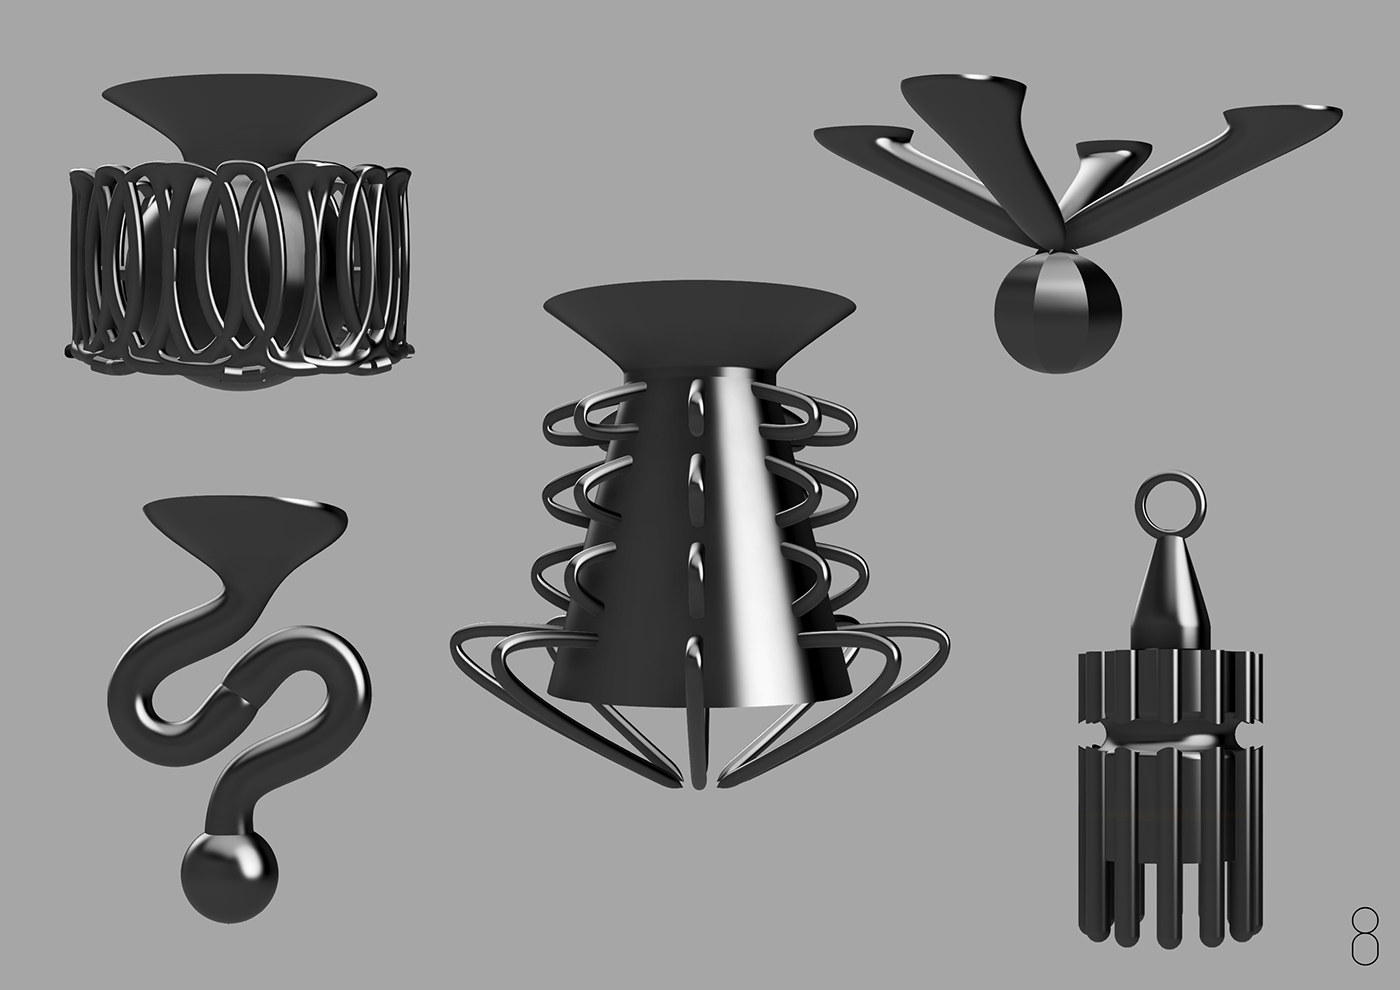 chandelier emotion formdesign formstudy lighting metaphor model